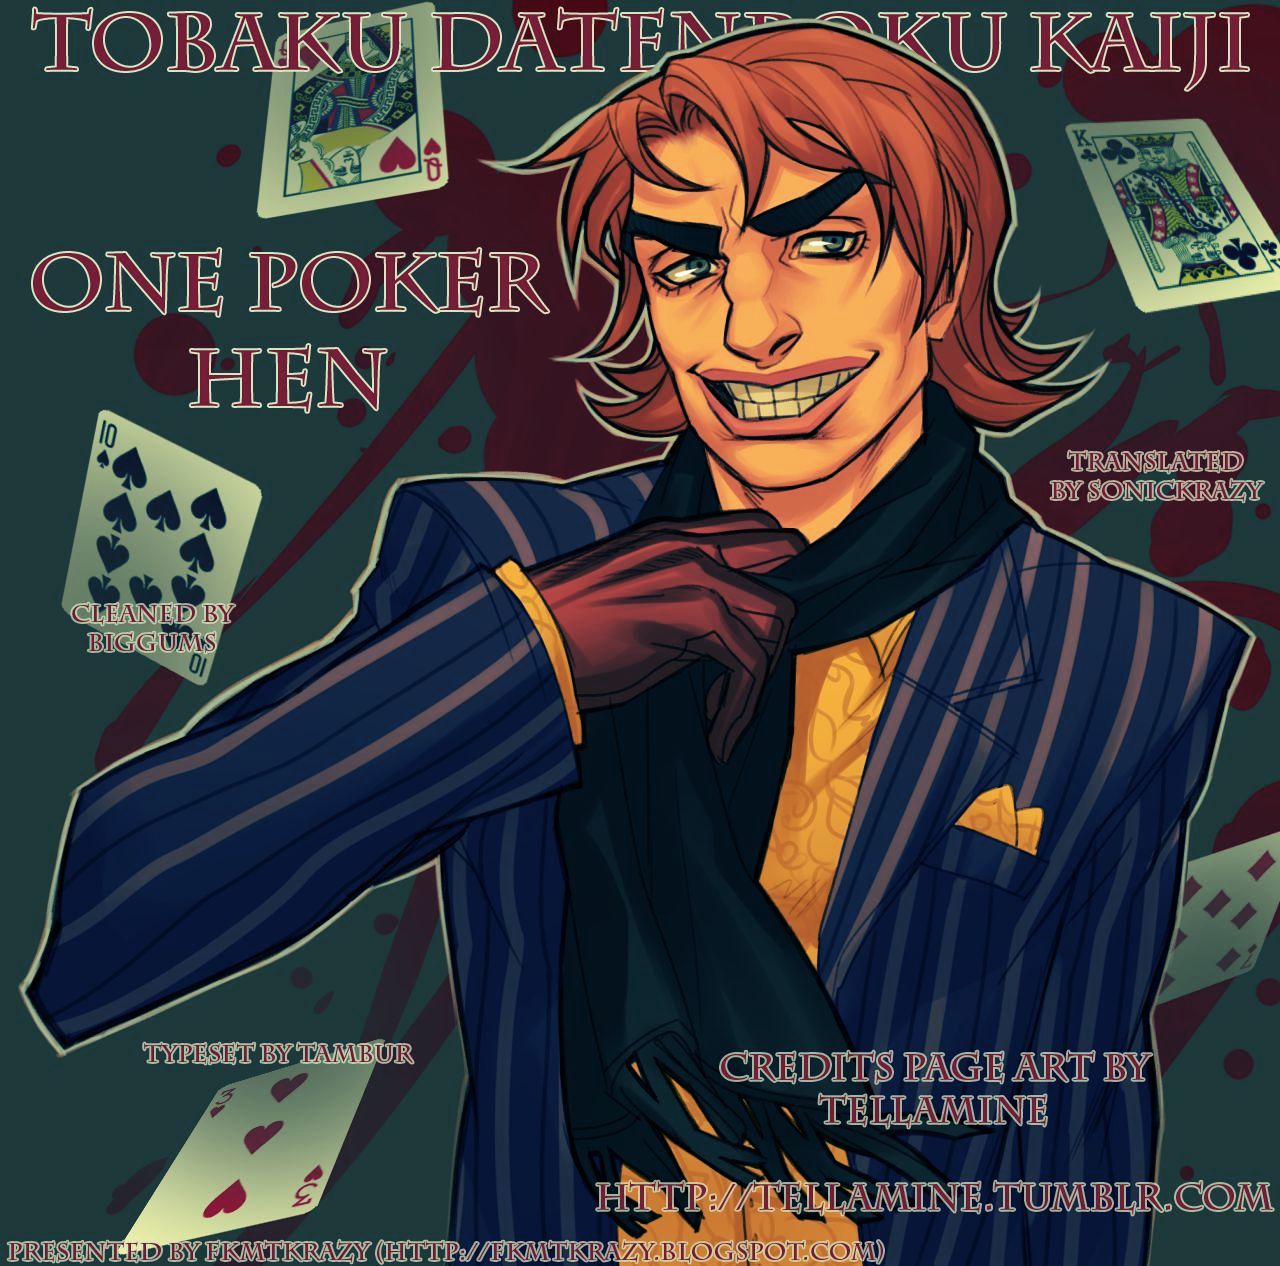 Tobaku Datenroku Kaiji - One Poker Hen 104 v2